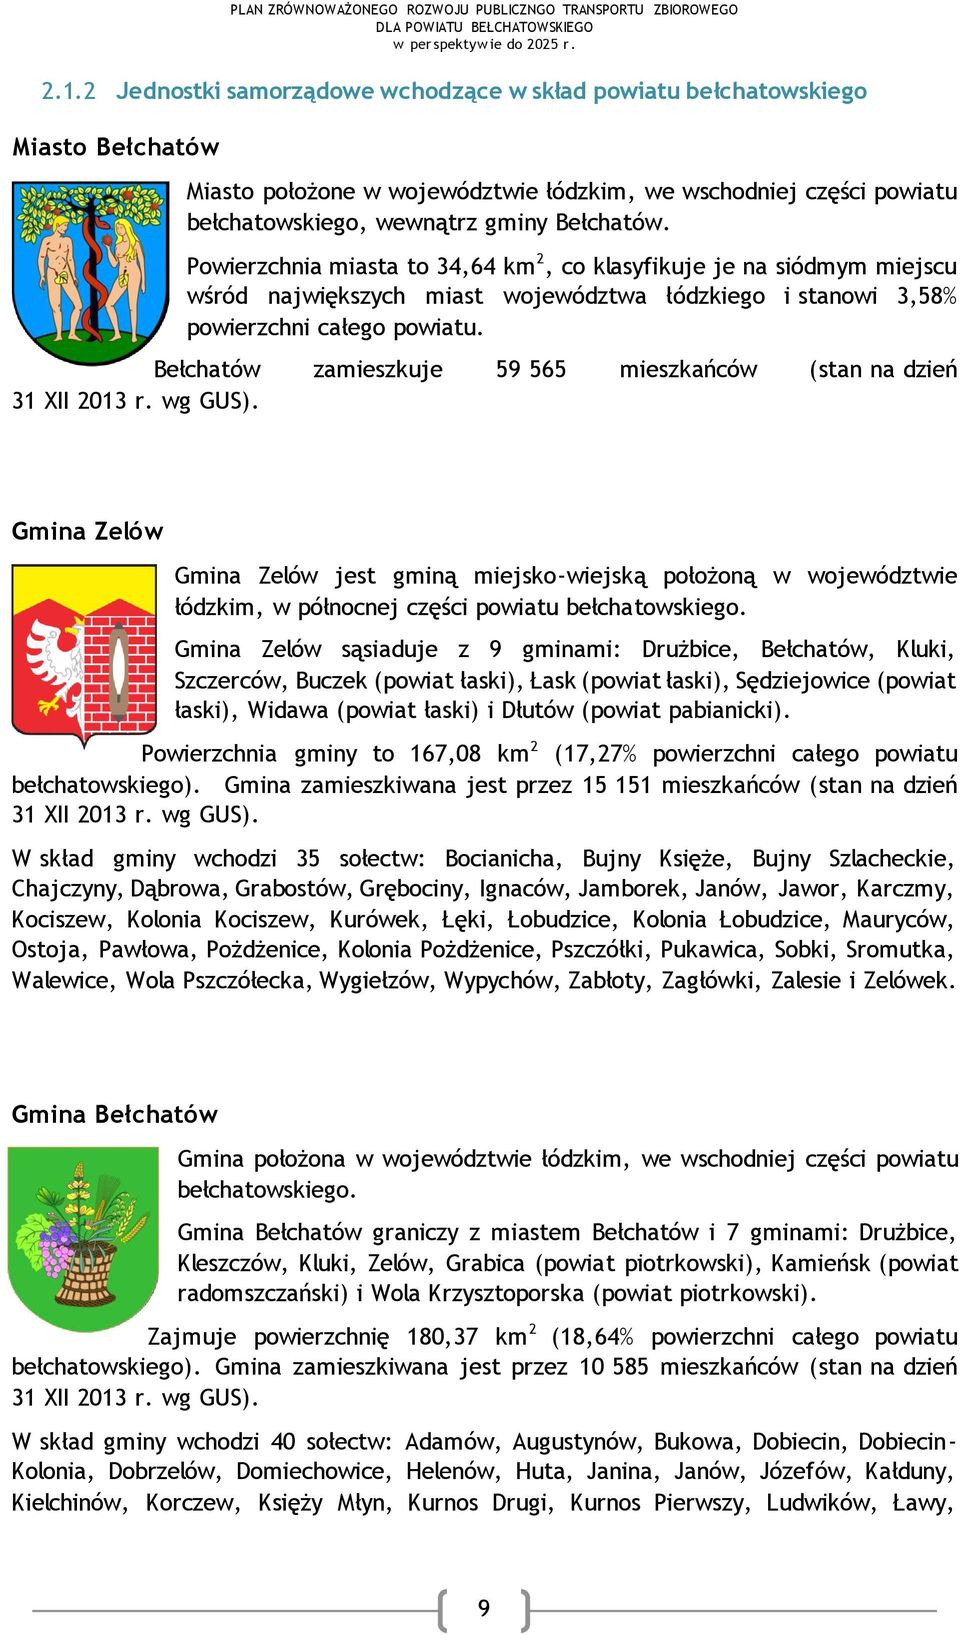 Bełchatów zamieszkuje 59 565 mieszkańców (stan na dzień 31 XII 2013 r. wg GUS).